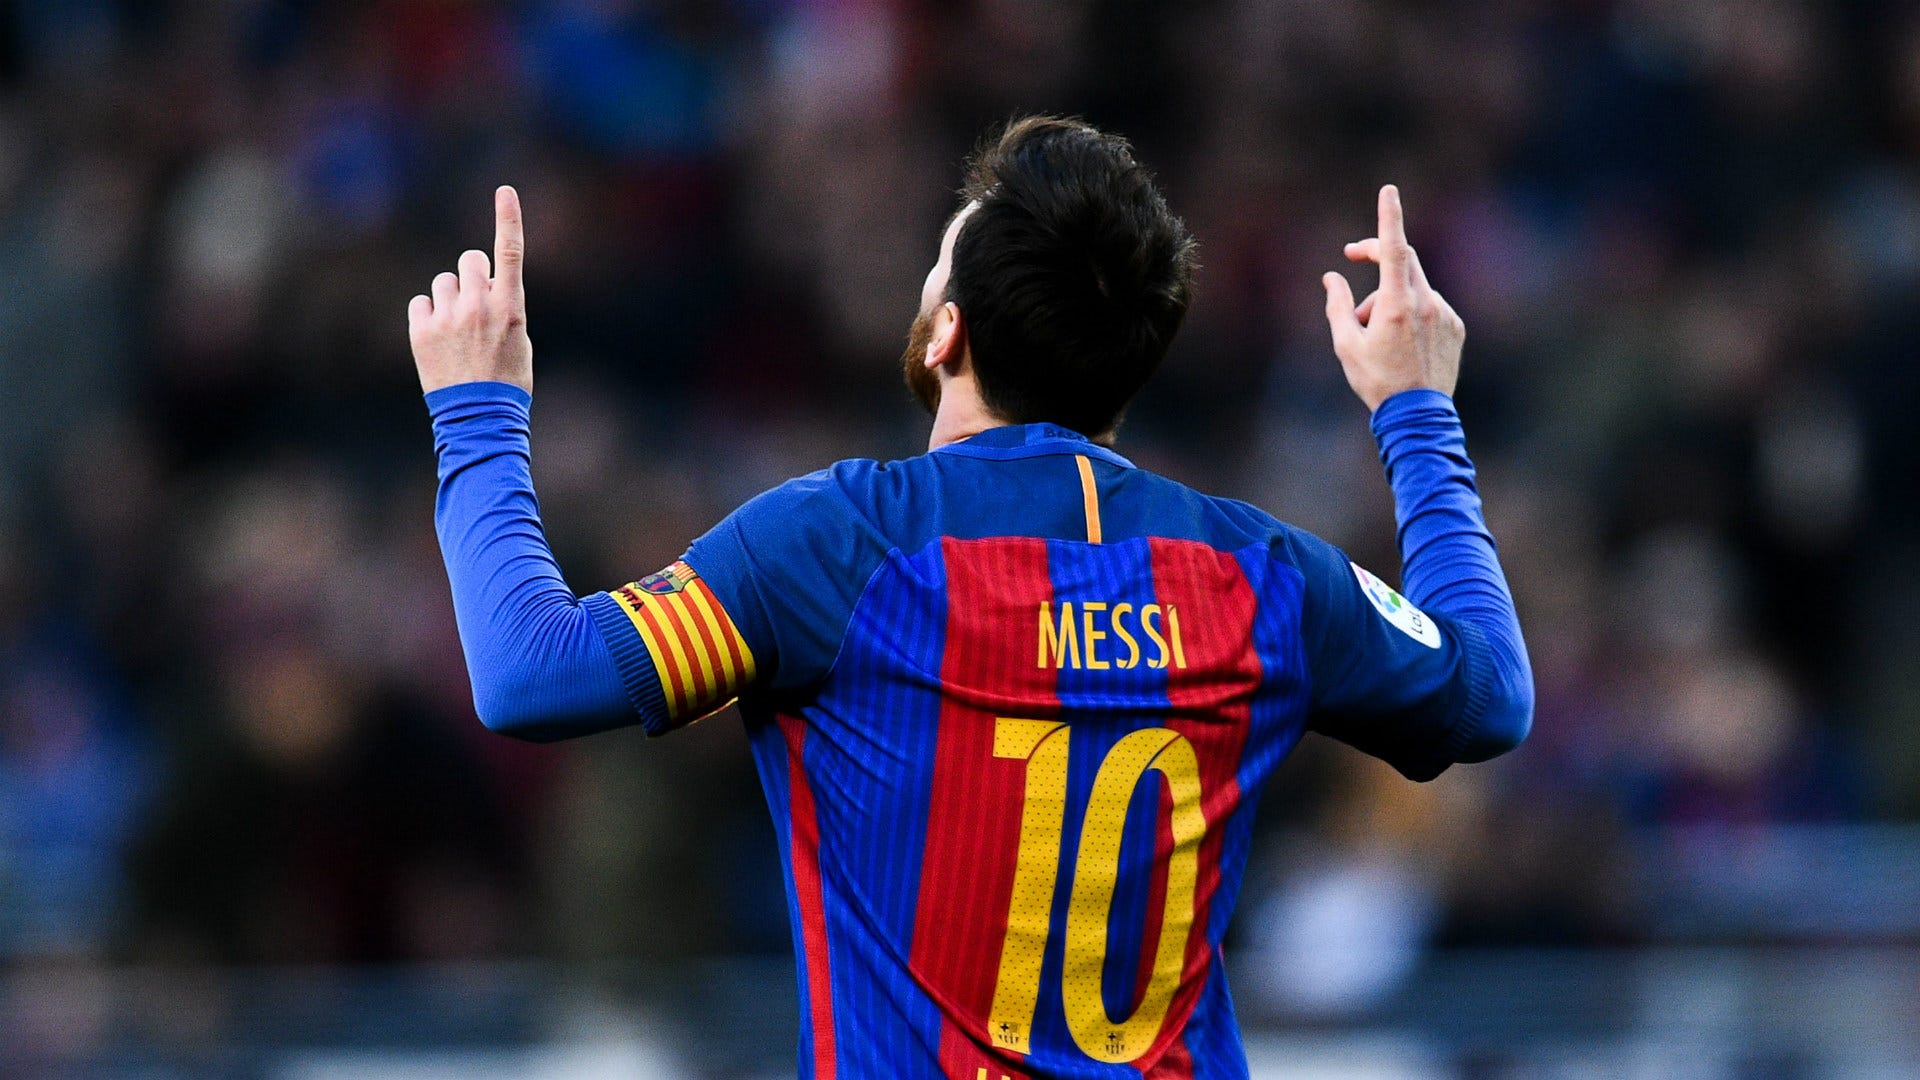 Hợp đồng Messi: Hợp đồng giữa Lionel Messi và Barcelona luôn là một đề tài được các fan hâm mộ quan tâm và bàn tán. Với sự gắn bó lâu năm của Messi với đội bóng này, tất cả đều mong muốn siêu sao người Argentina sẽ tiếp tục cống hiến cho đội bóng mà anh đang yêu thương. Bạn muốn biết thông tin mới nhất về hợp đồng của Messi? Hãy xem ngay đoạn video được cập nhật liên tục về chuyện chữ ký của Messi.